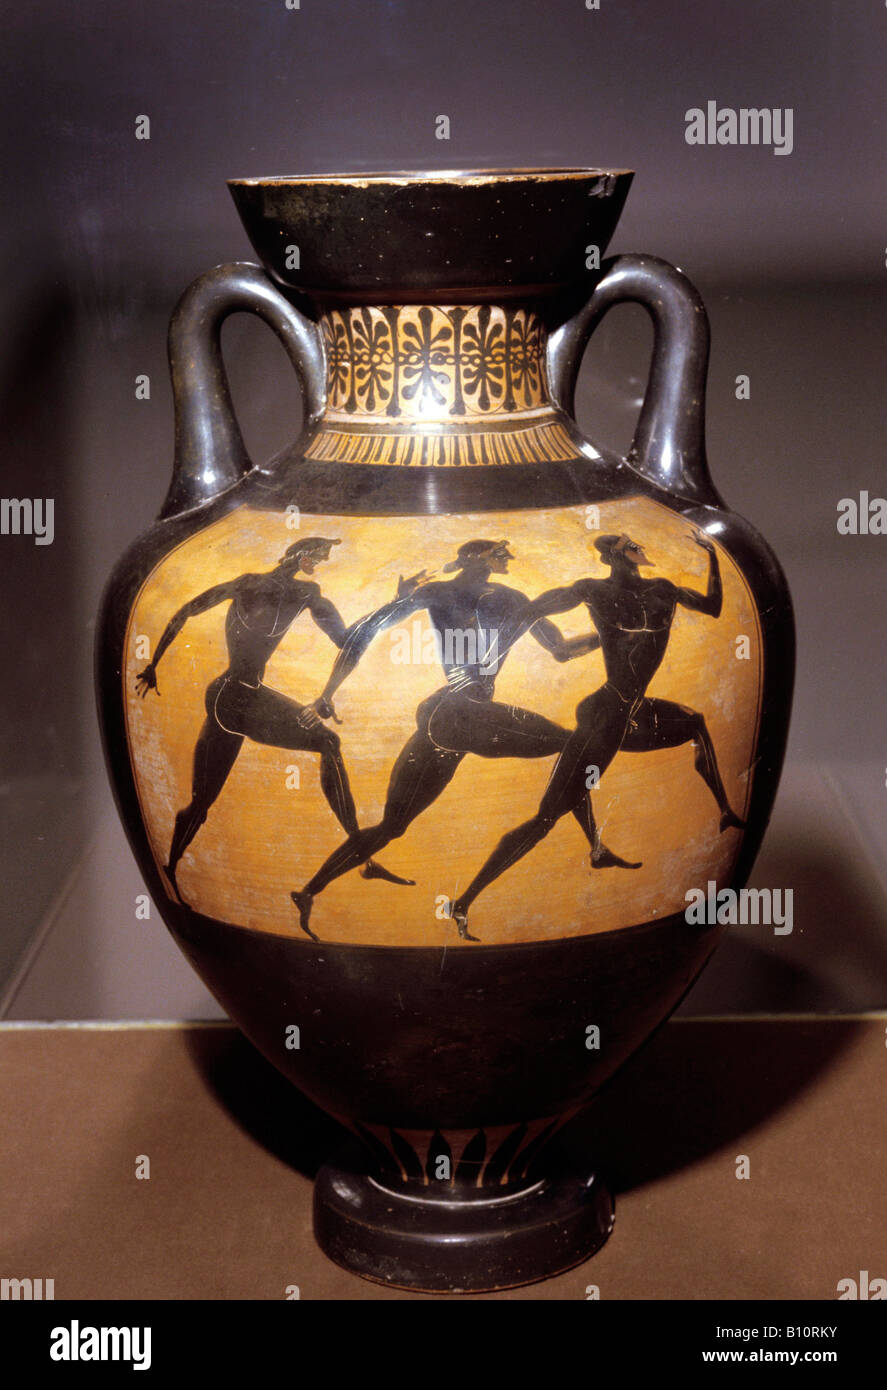 Les coureurs olympiques Grenier, figure noire Vase Panathénaïque 5e 100 AV de la Grèce. Banque D'Images